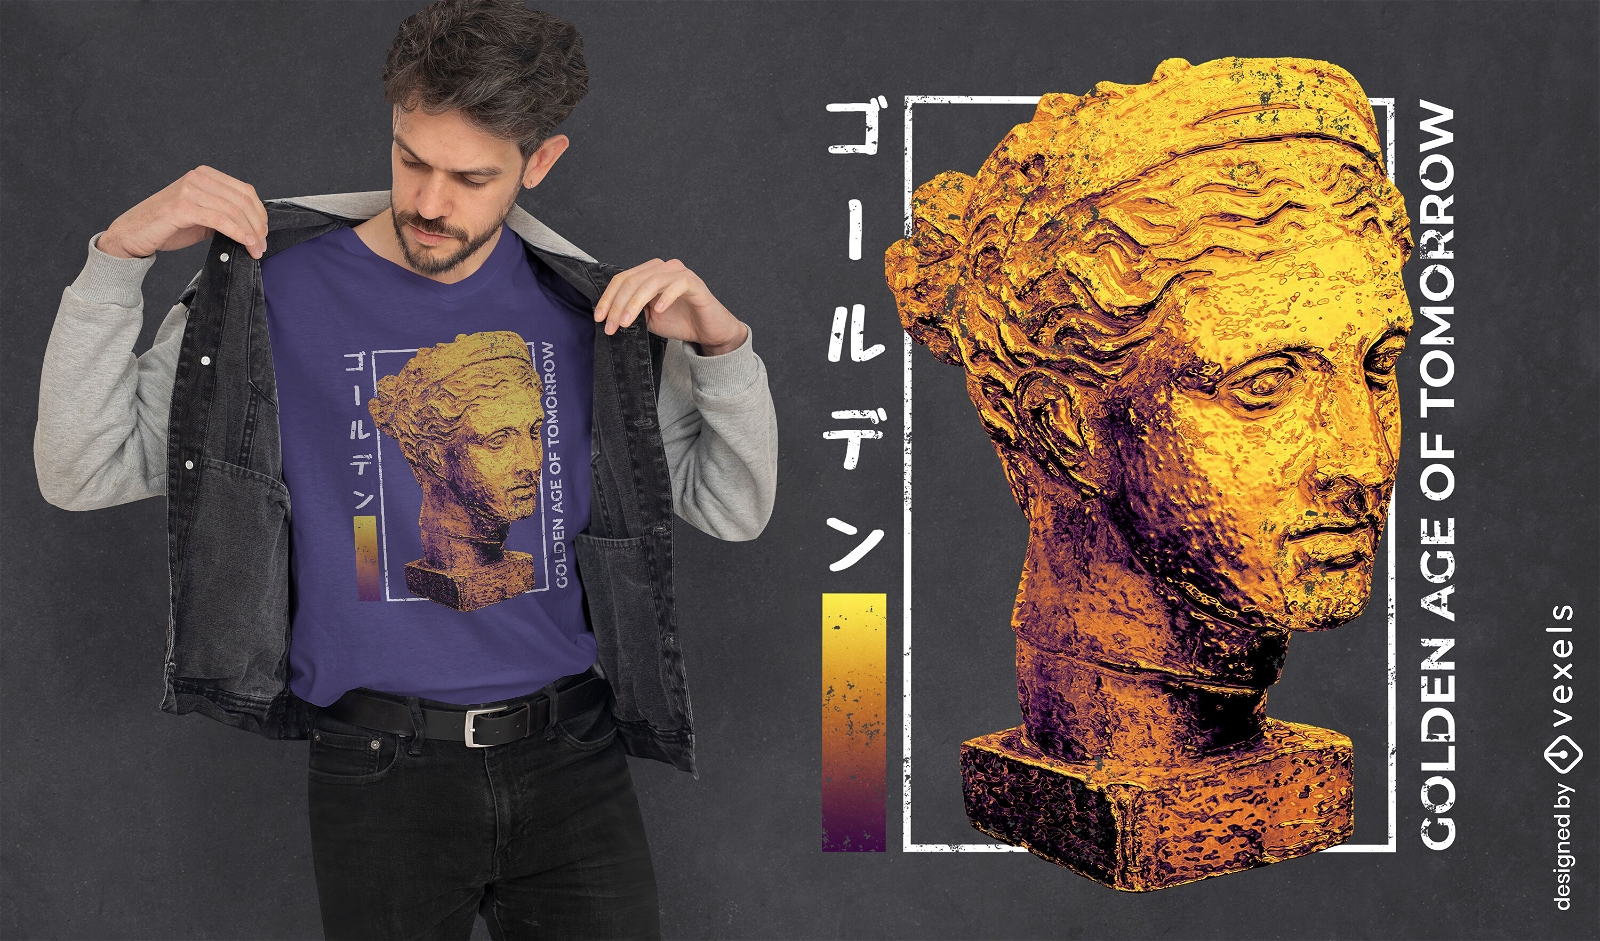 K?nstlerisches T-Shirt-Design des griechischen Statuenkopfes